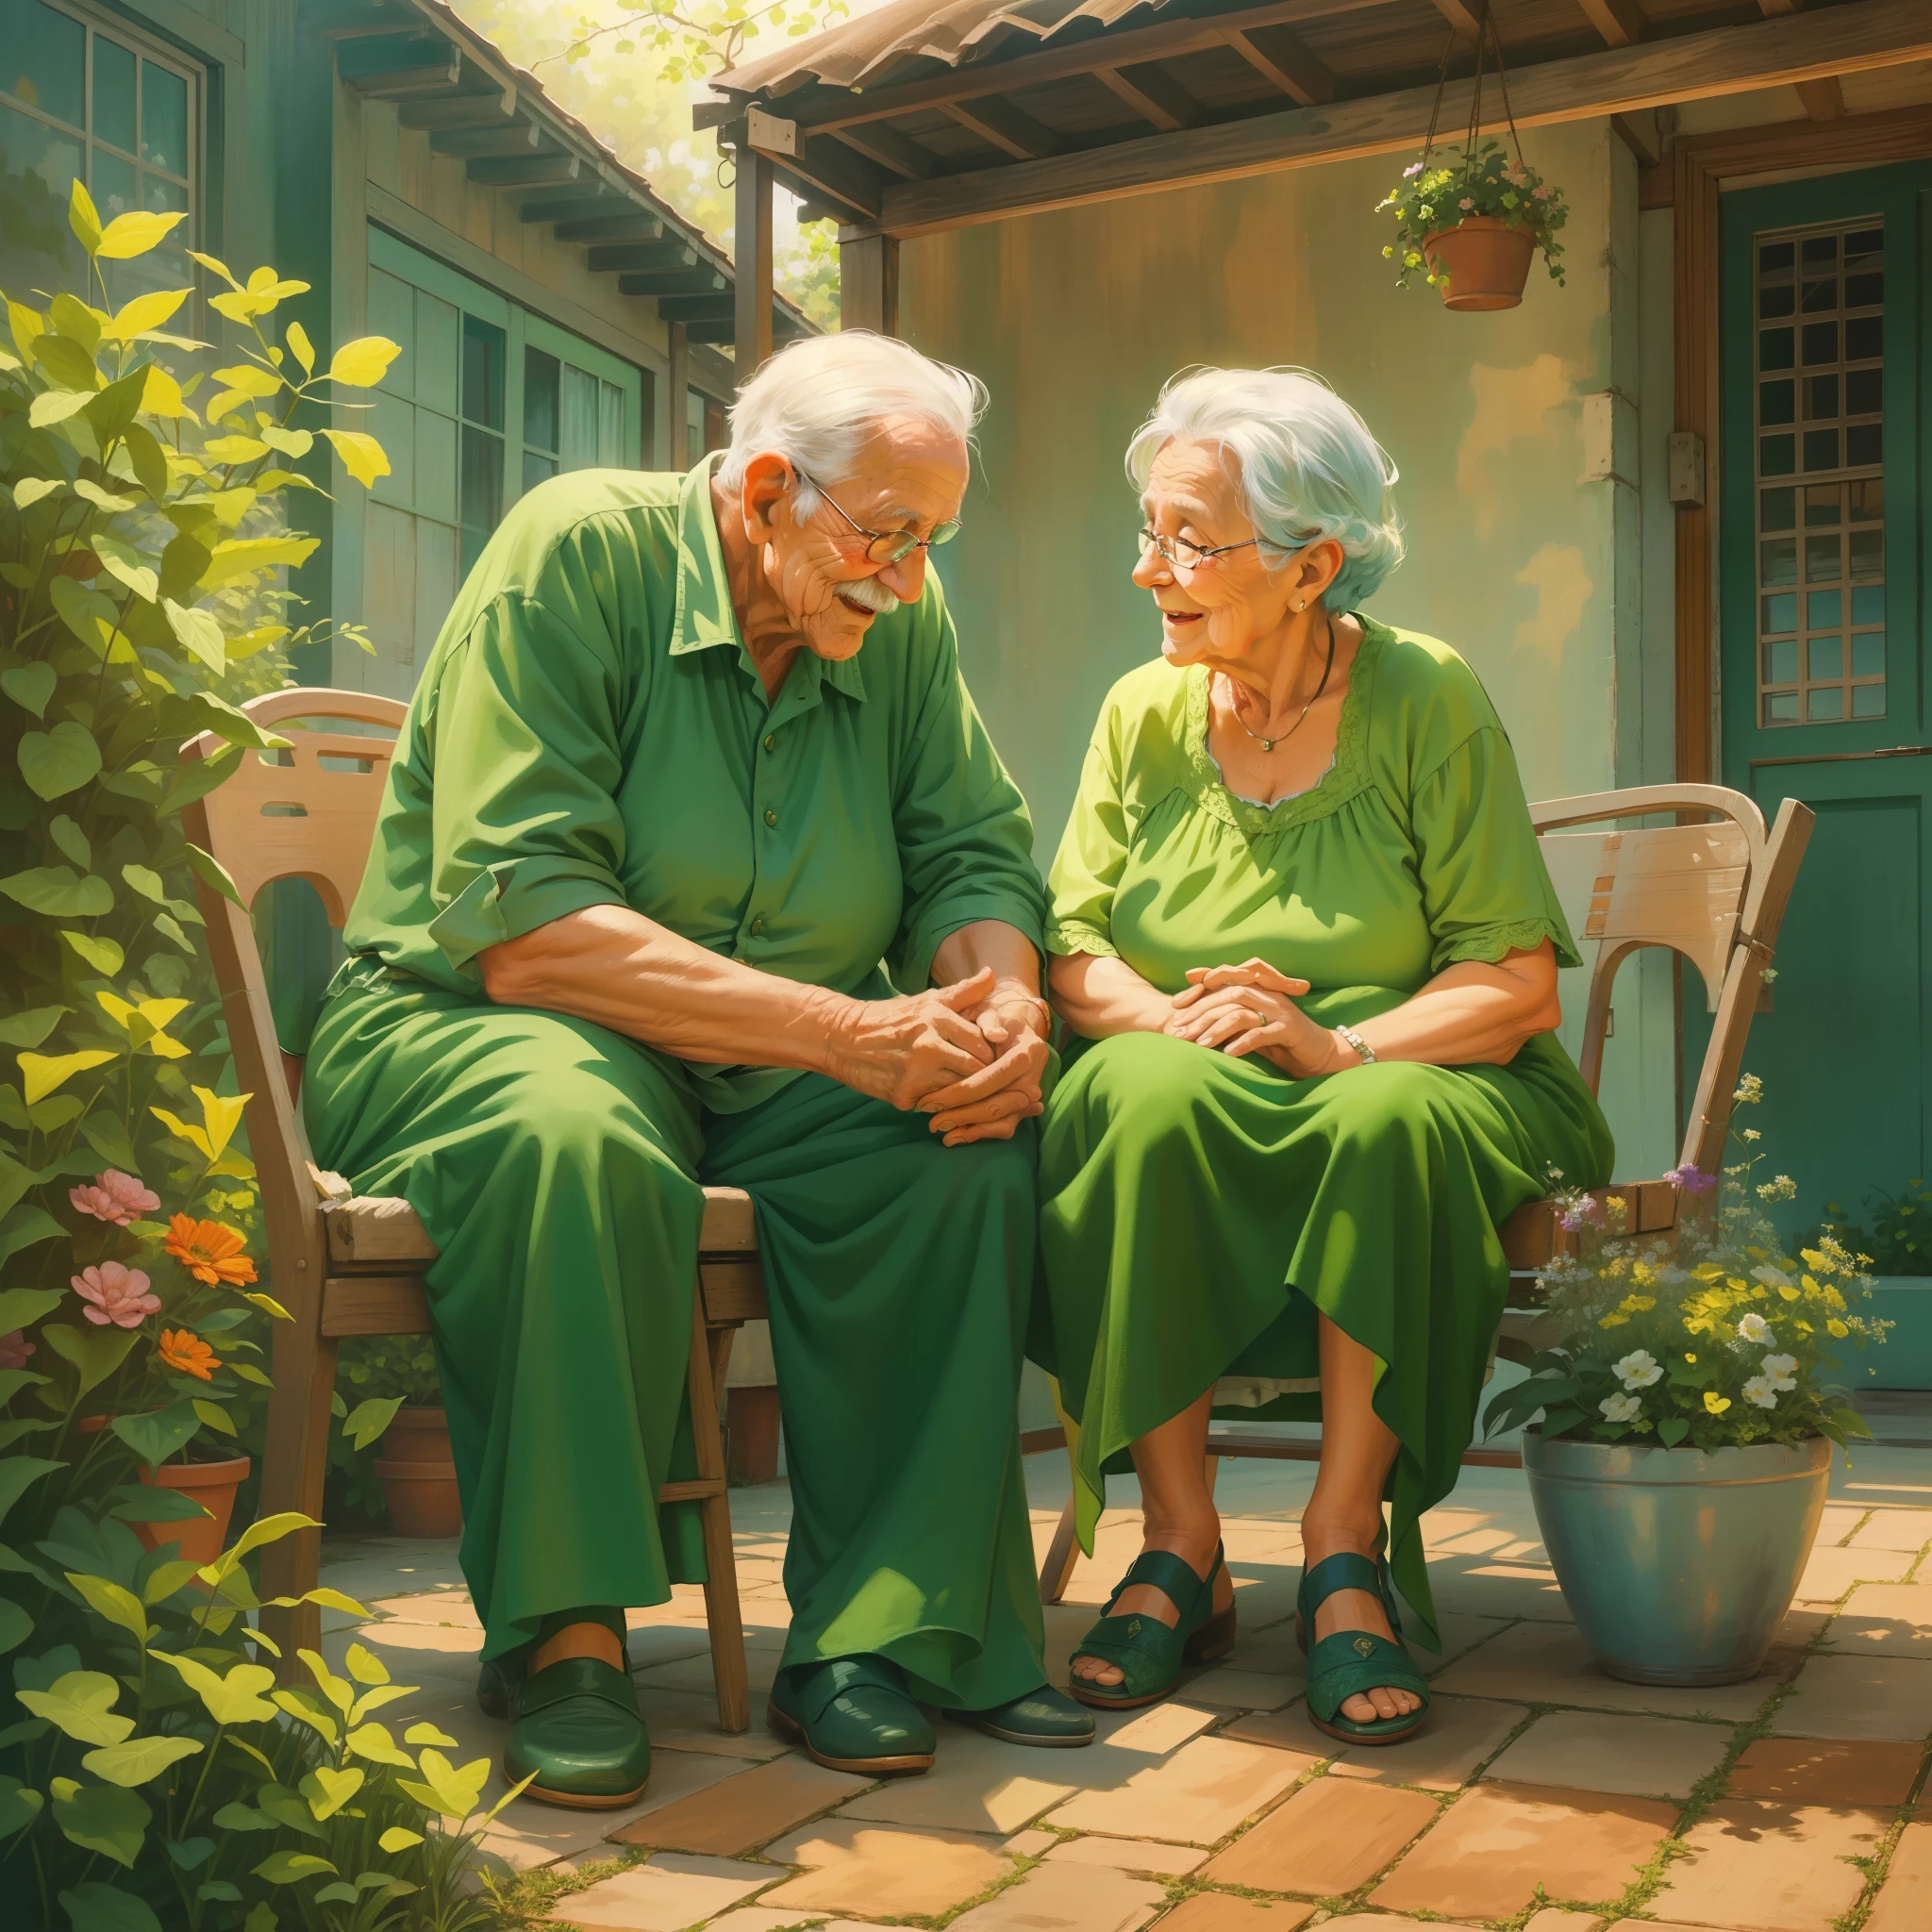 (お互いに恋をしている古いおばあちゃんと古いおばあちゃん, 緑のドレスを着たおばあちゃん, 一緒にパティオに座っている),図,アクリル画,[鮮やかな色彩],[家族の絆],[素敵なシーン],[平和な雰囲気],(最高品質,高解像度,傑作:1.2),超詳細,[自然光],[懐かしい],幸せな気分,暖かい色調